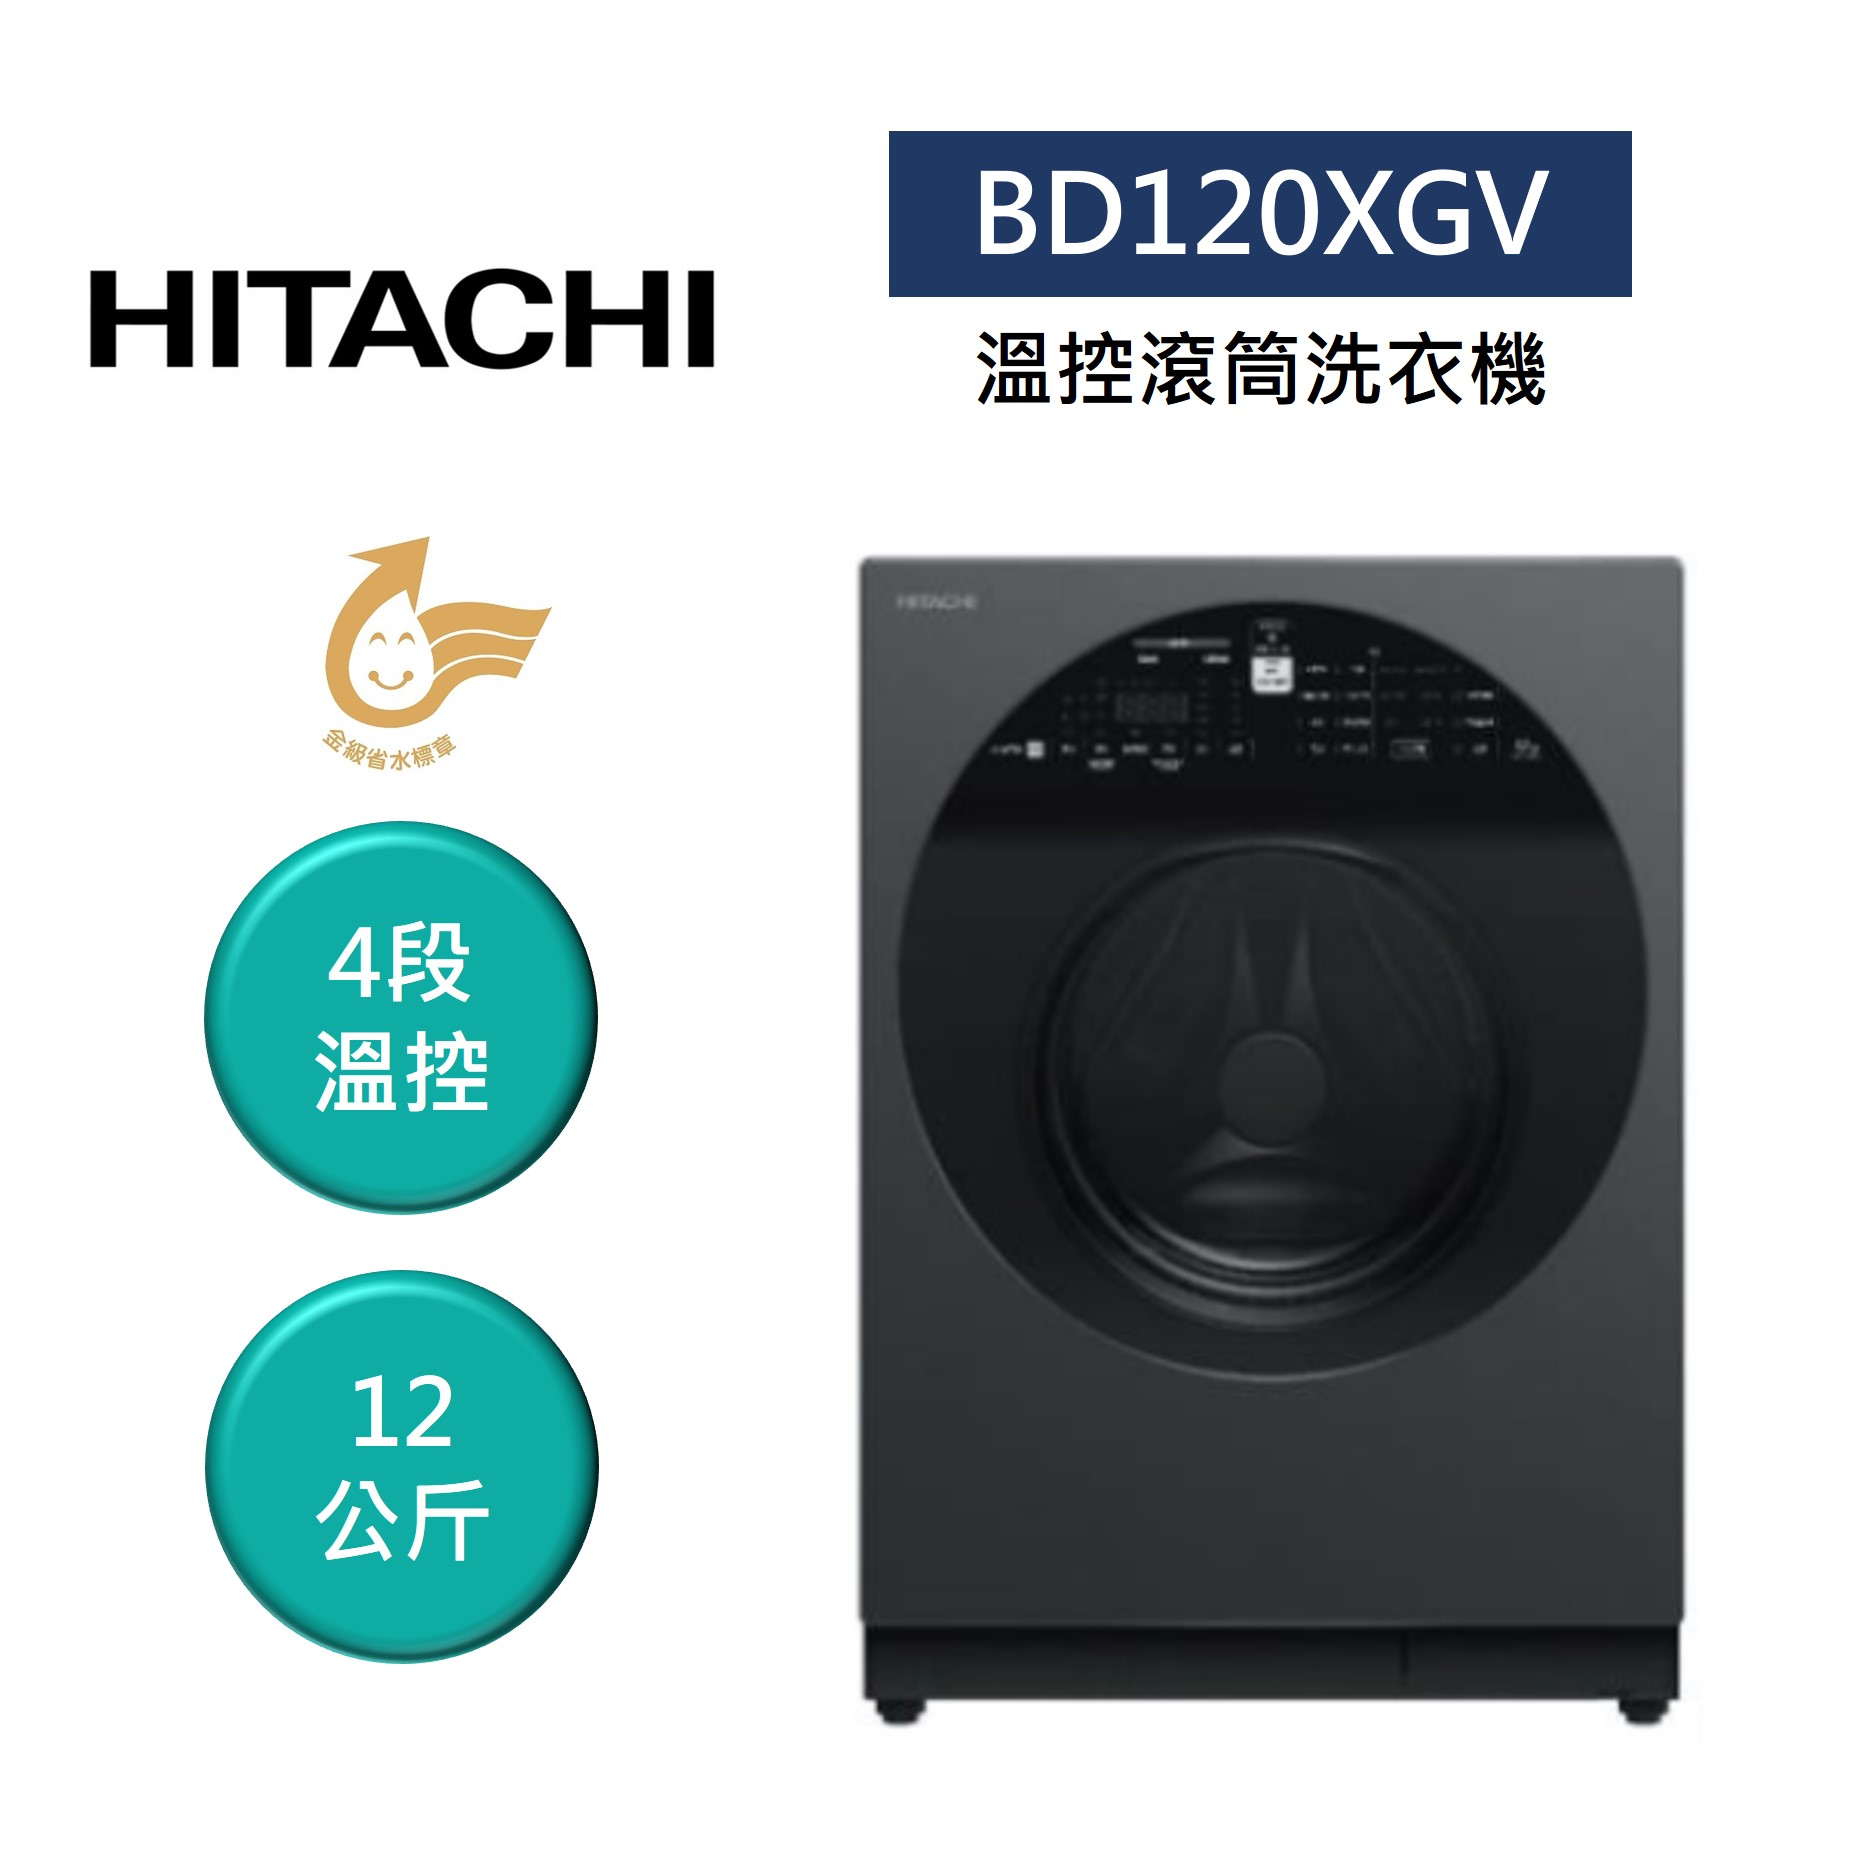 【私訊享優惠+8%點數回饋】HITACHI 日立 BD120XGV 12公斤 IOT 溫控滾筒洗衣機